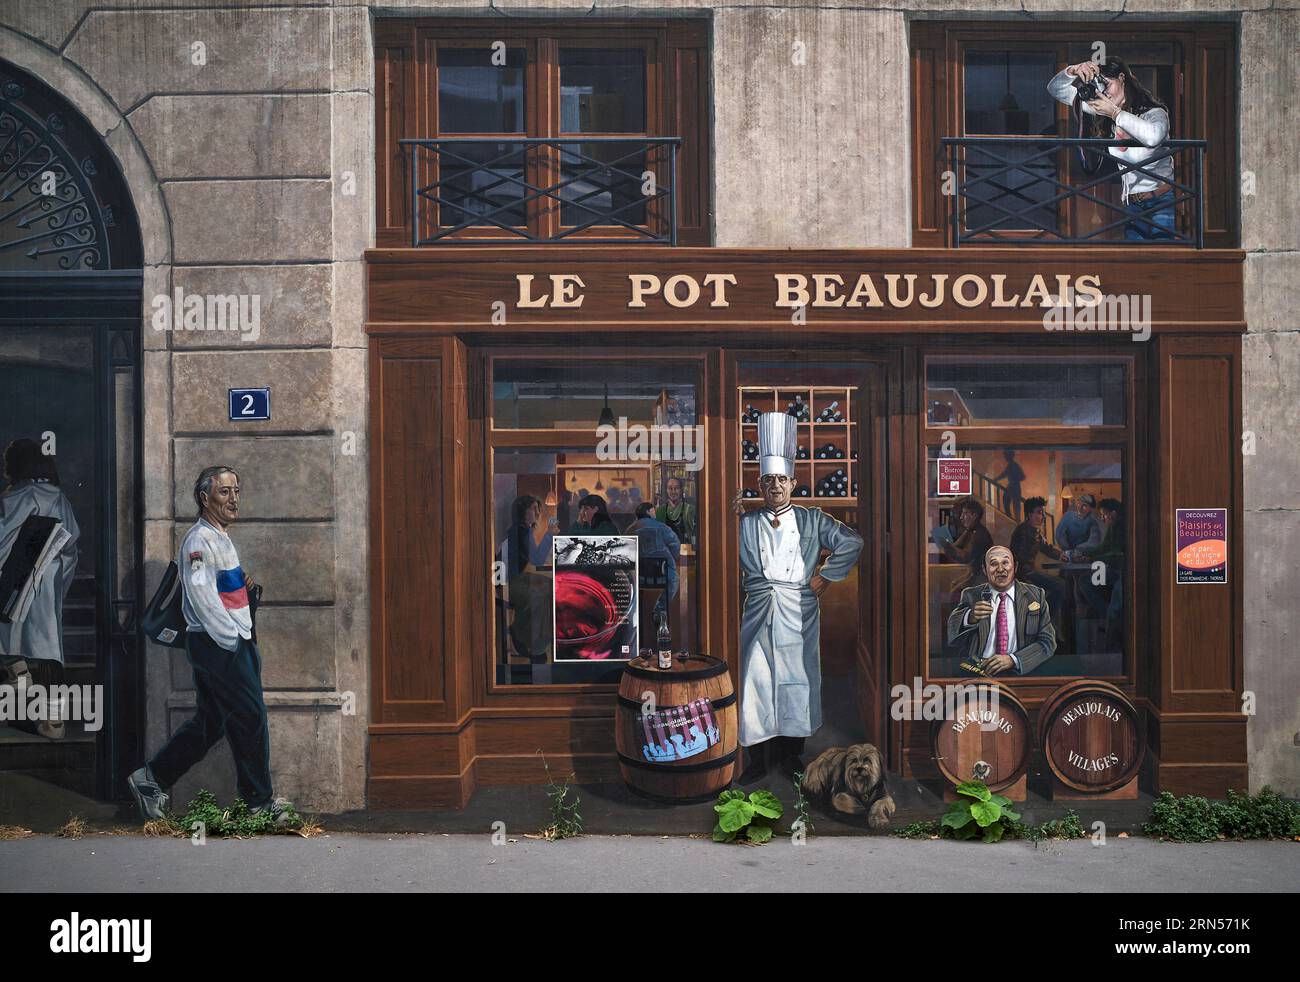 L'affresco la Fresque des Lyonnais raffigura famosi abitanti della città, Bernard Lacombe, lo chef Paul Bocuse, Frederic Dard, il fotografo Bertrand Foto Stock